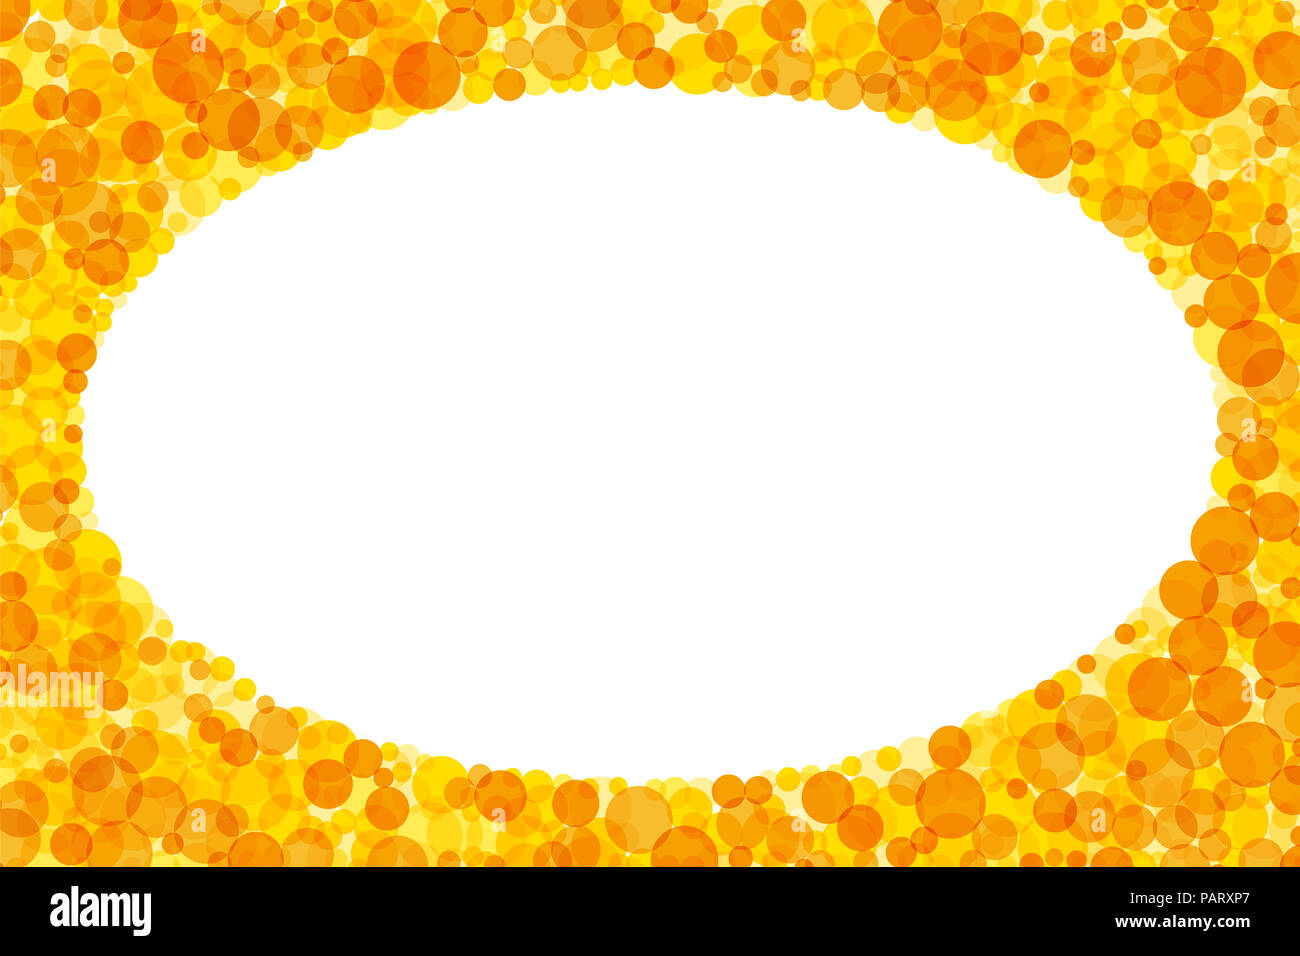 Ovaler Rahmen und Hintergrund aus gelb und orange Punkte. Helle durchscheinende Flecken bildet ein Rechteck mit einer weißen elliptischen Raum im Inneren. Stockfoto